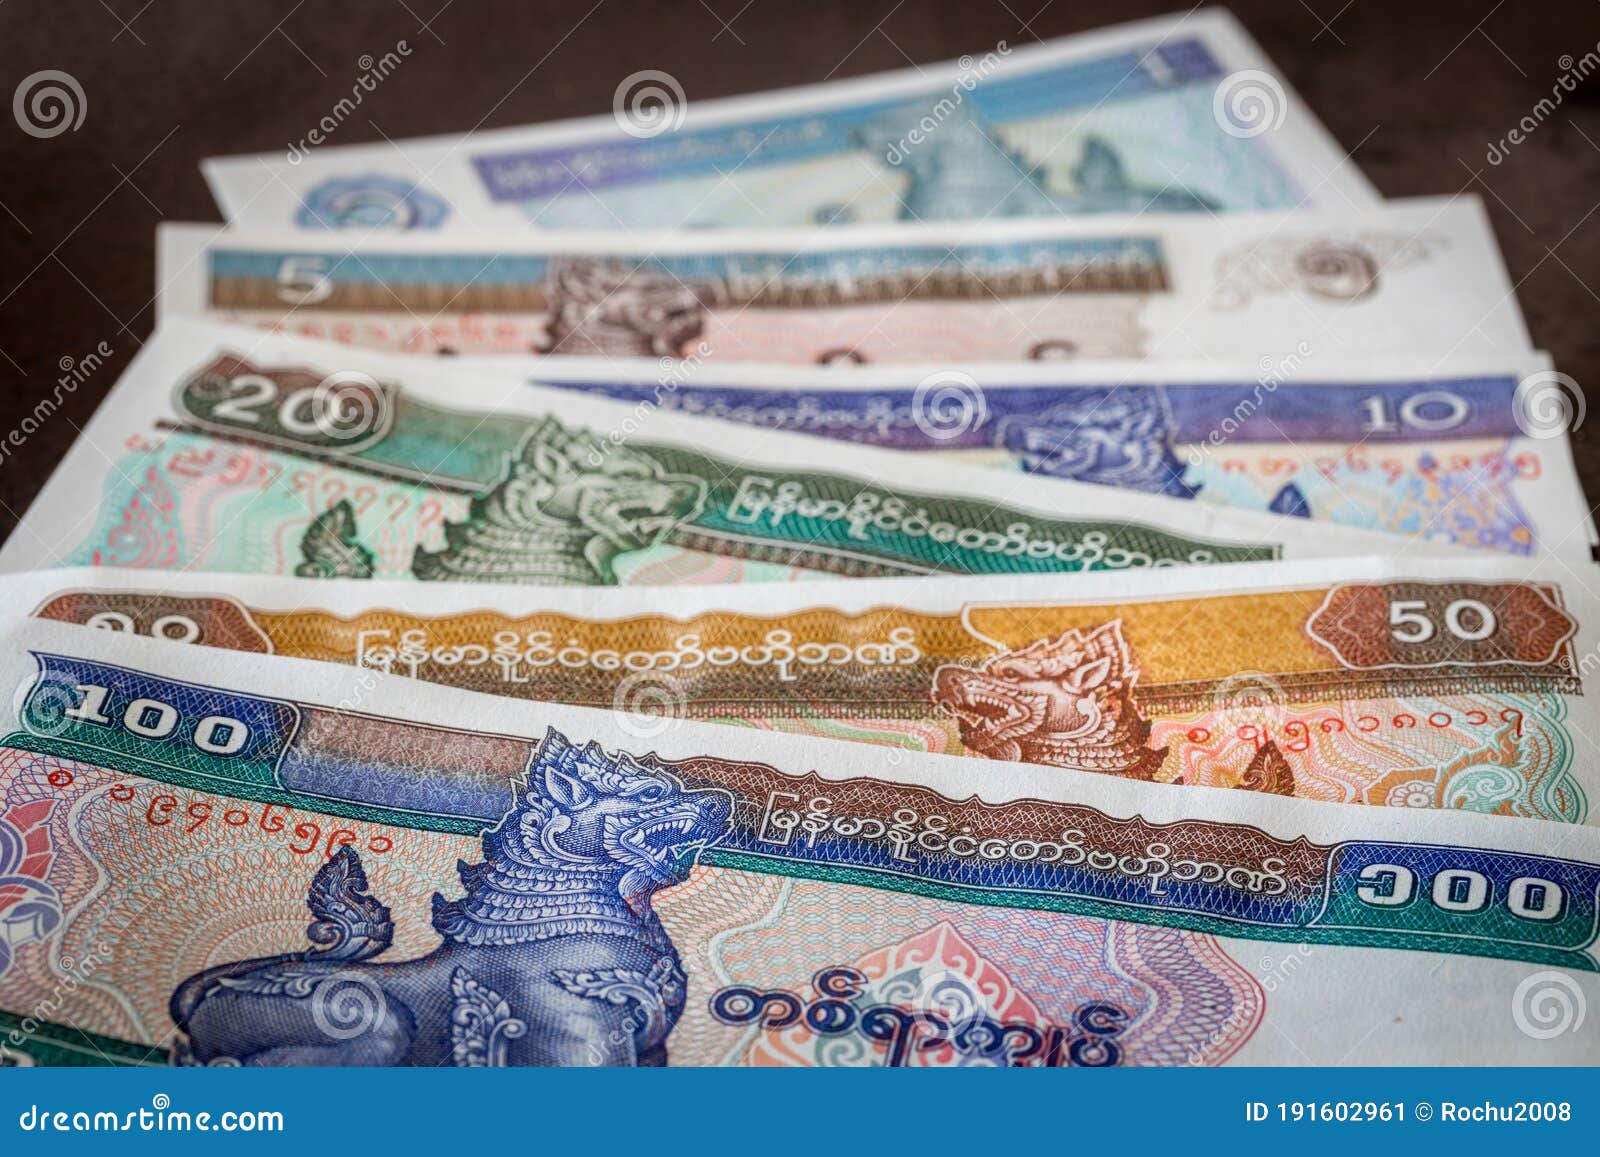 Myanmar currency